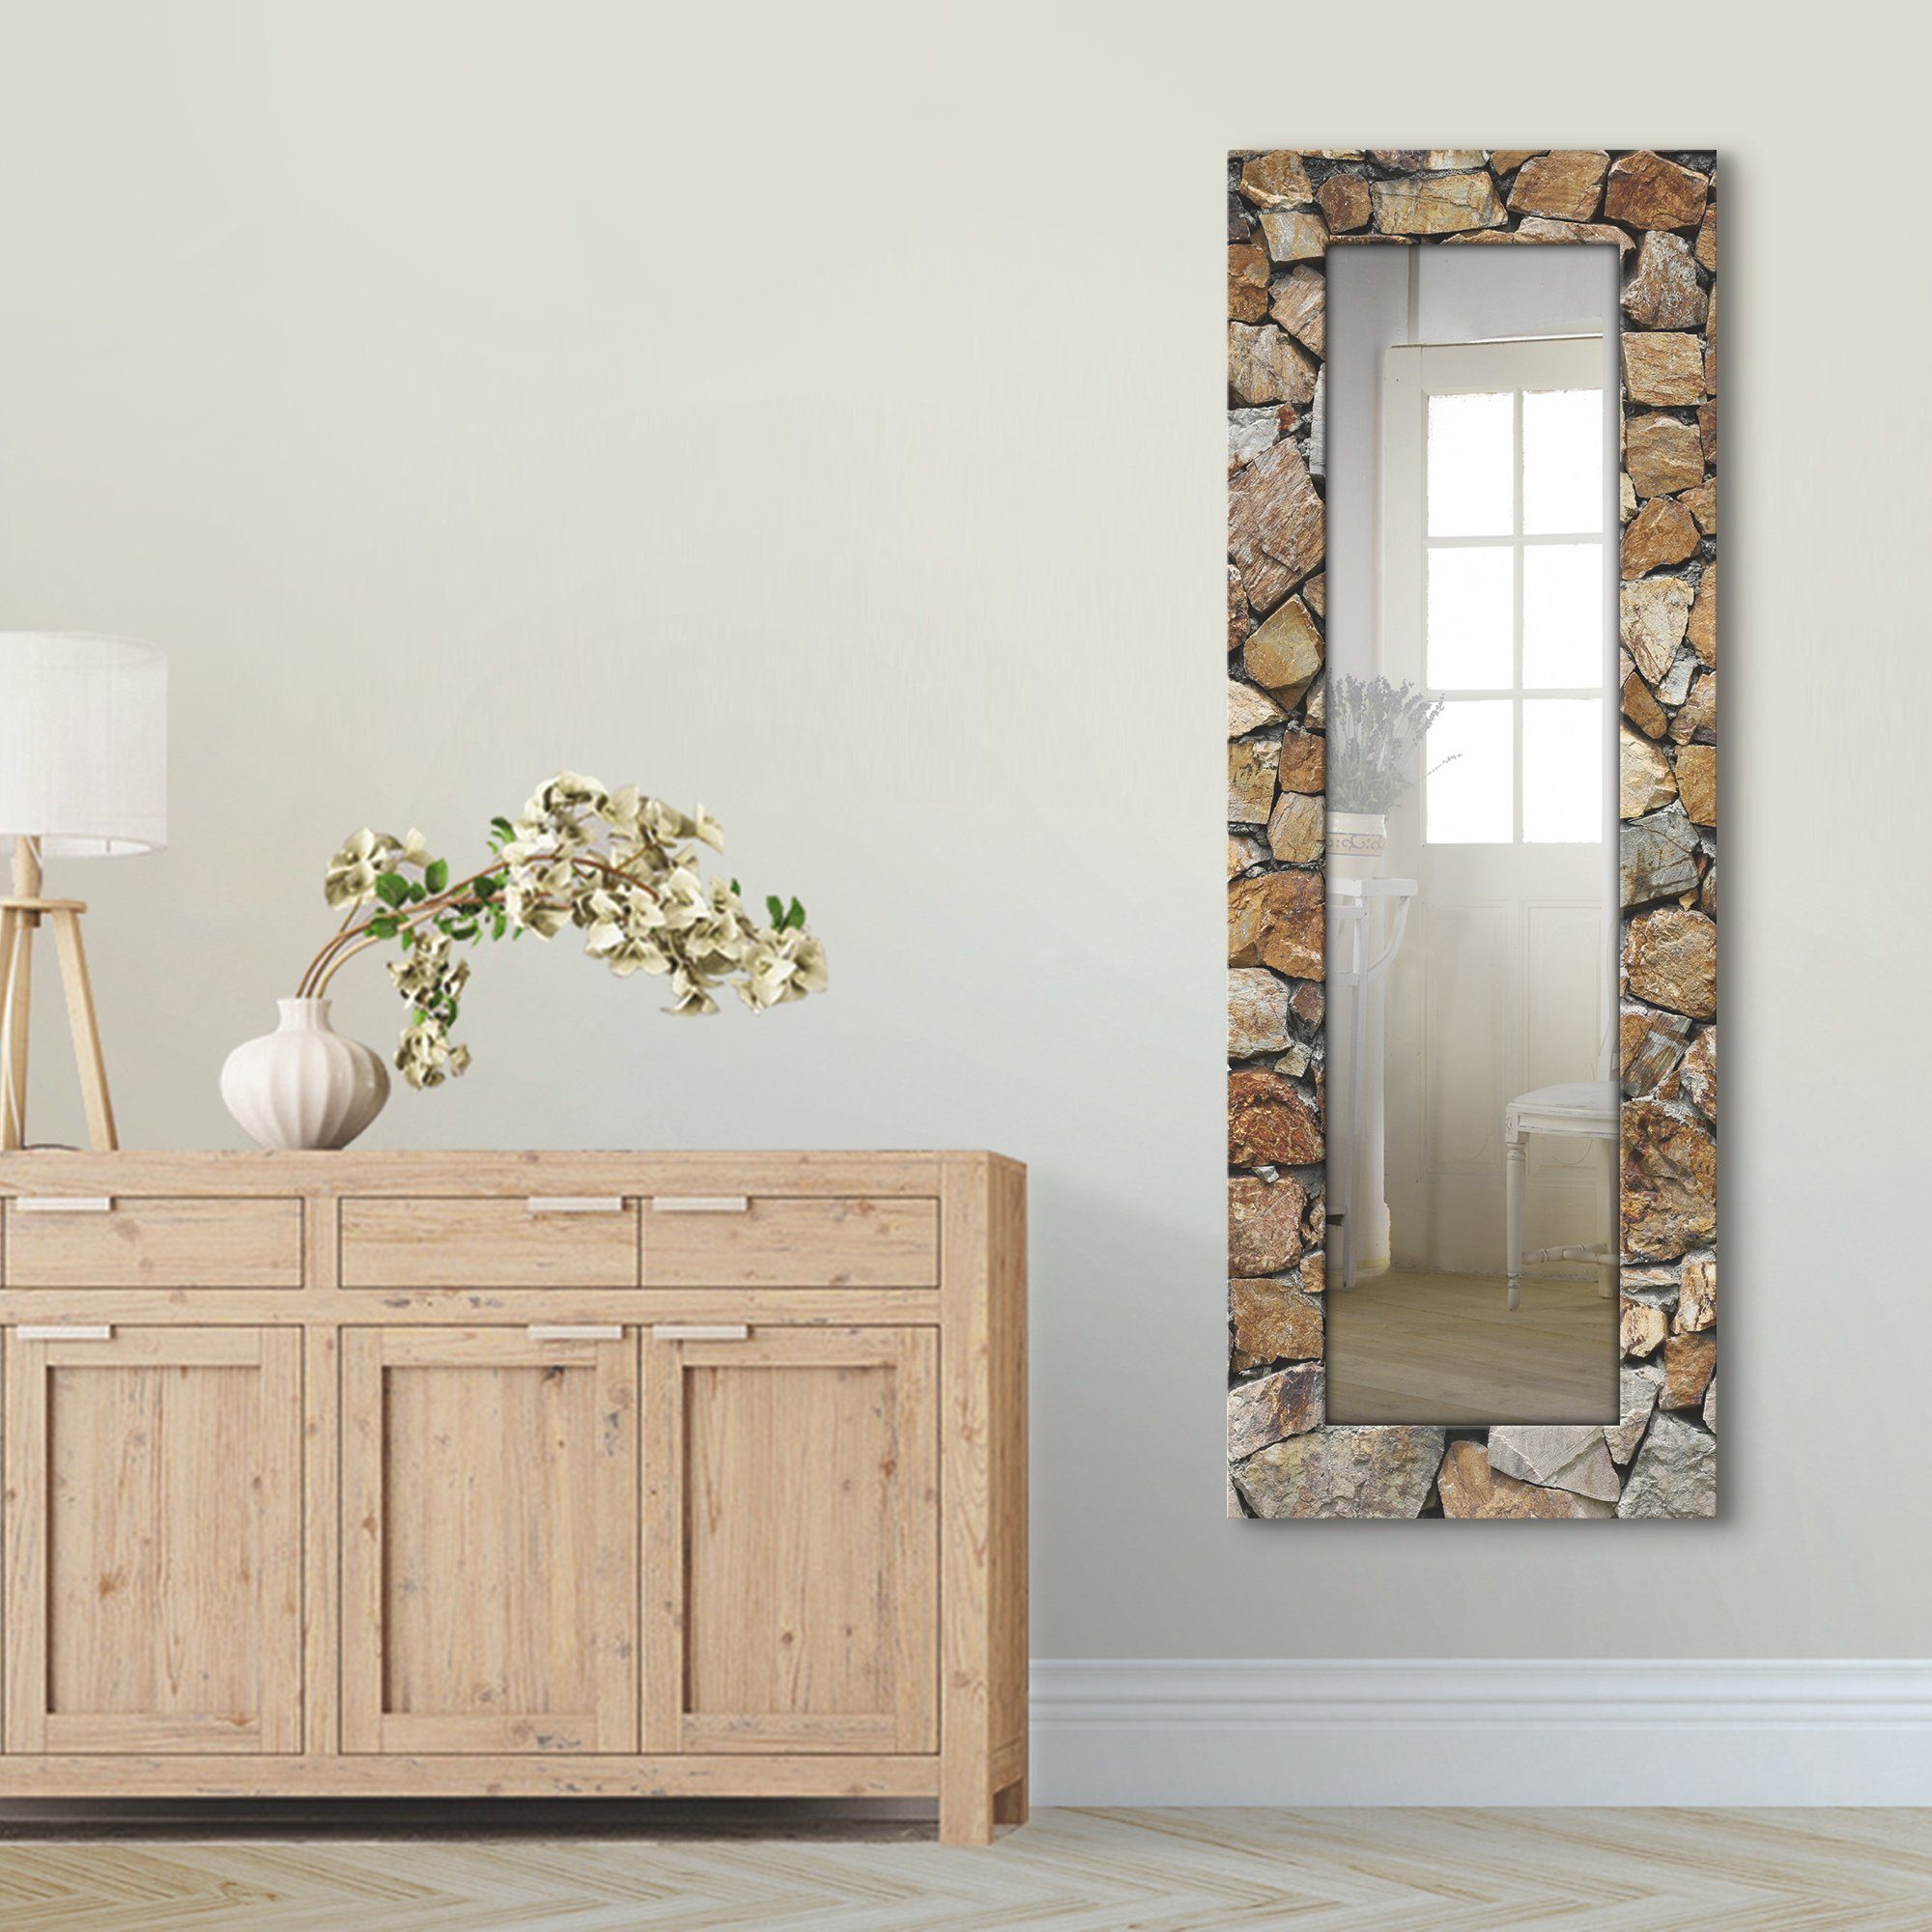 Artland Sierspiegel Bruine stenen muur ingelijste spiegel voor het hele lichaam met motiefrand, geschikt voor kleine, smalle hal, halspiegel, mirror spiegel omrand om op te hangen